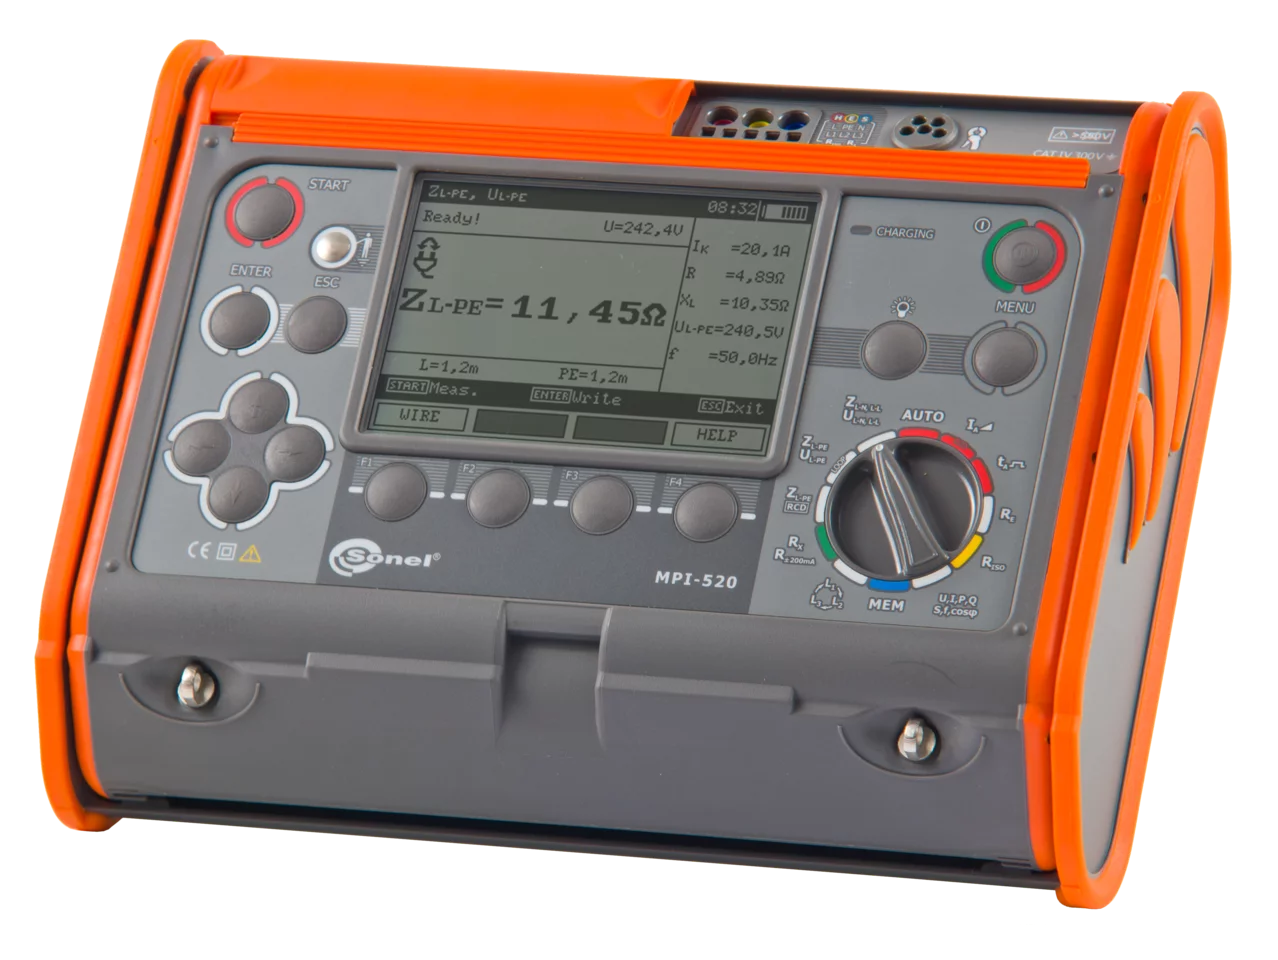 Multi-misuratore dei parametri delle installazioni elettriche MPI-520-1